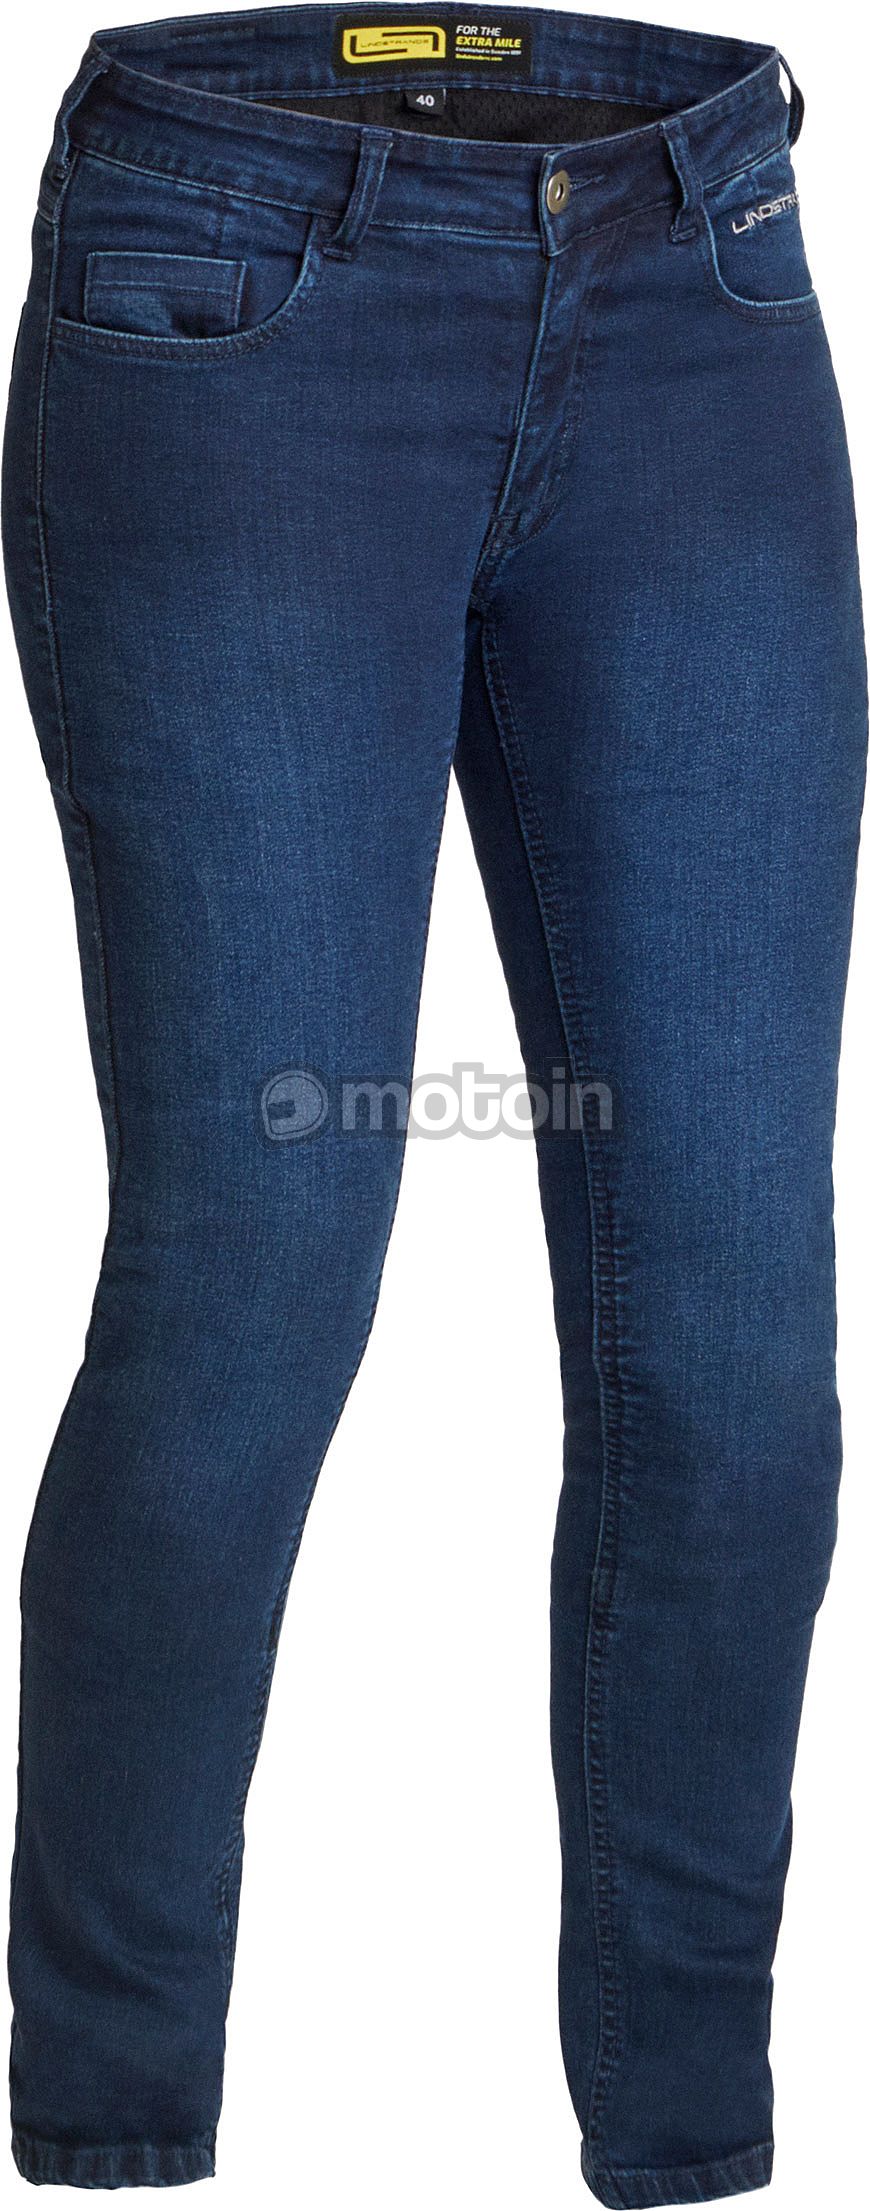 Lindstrands Rone, jeans femmes